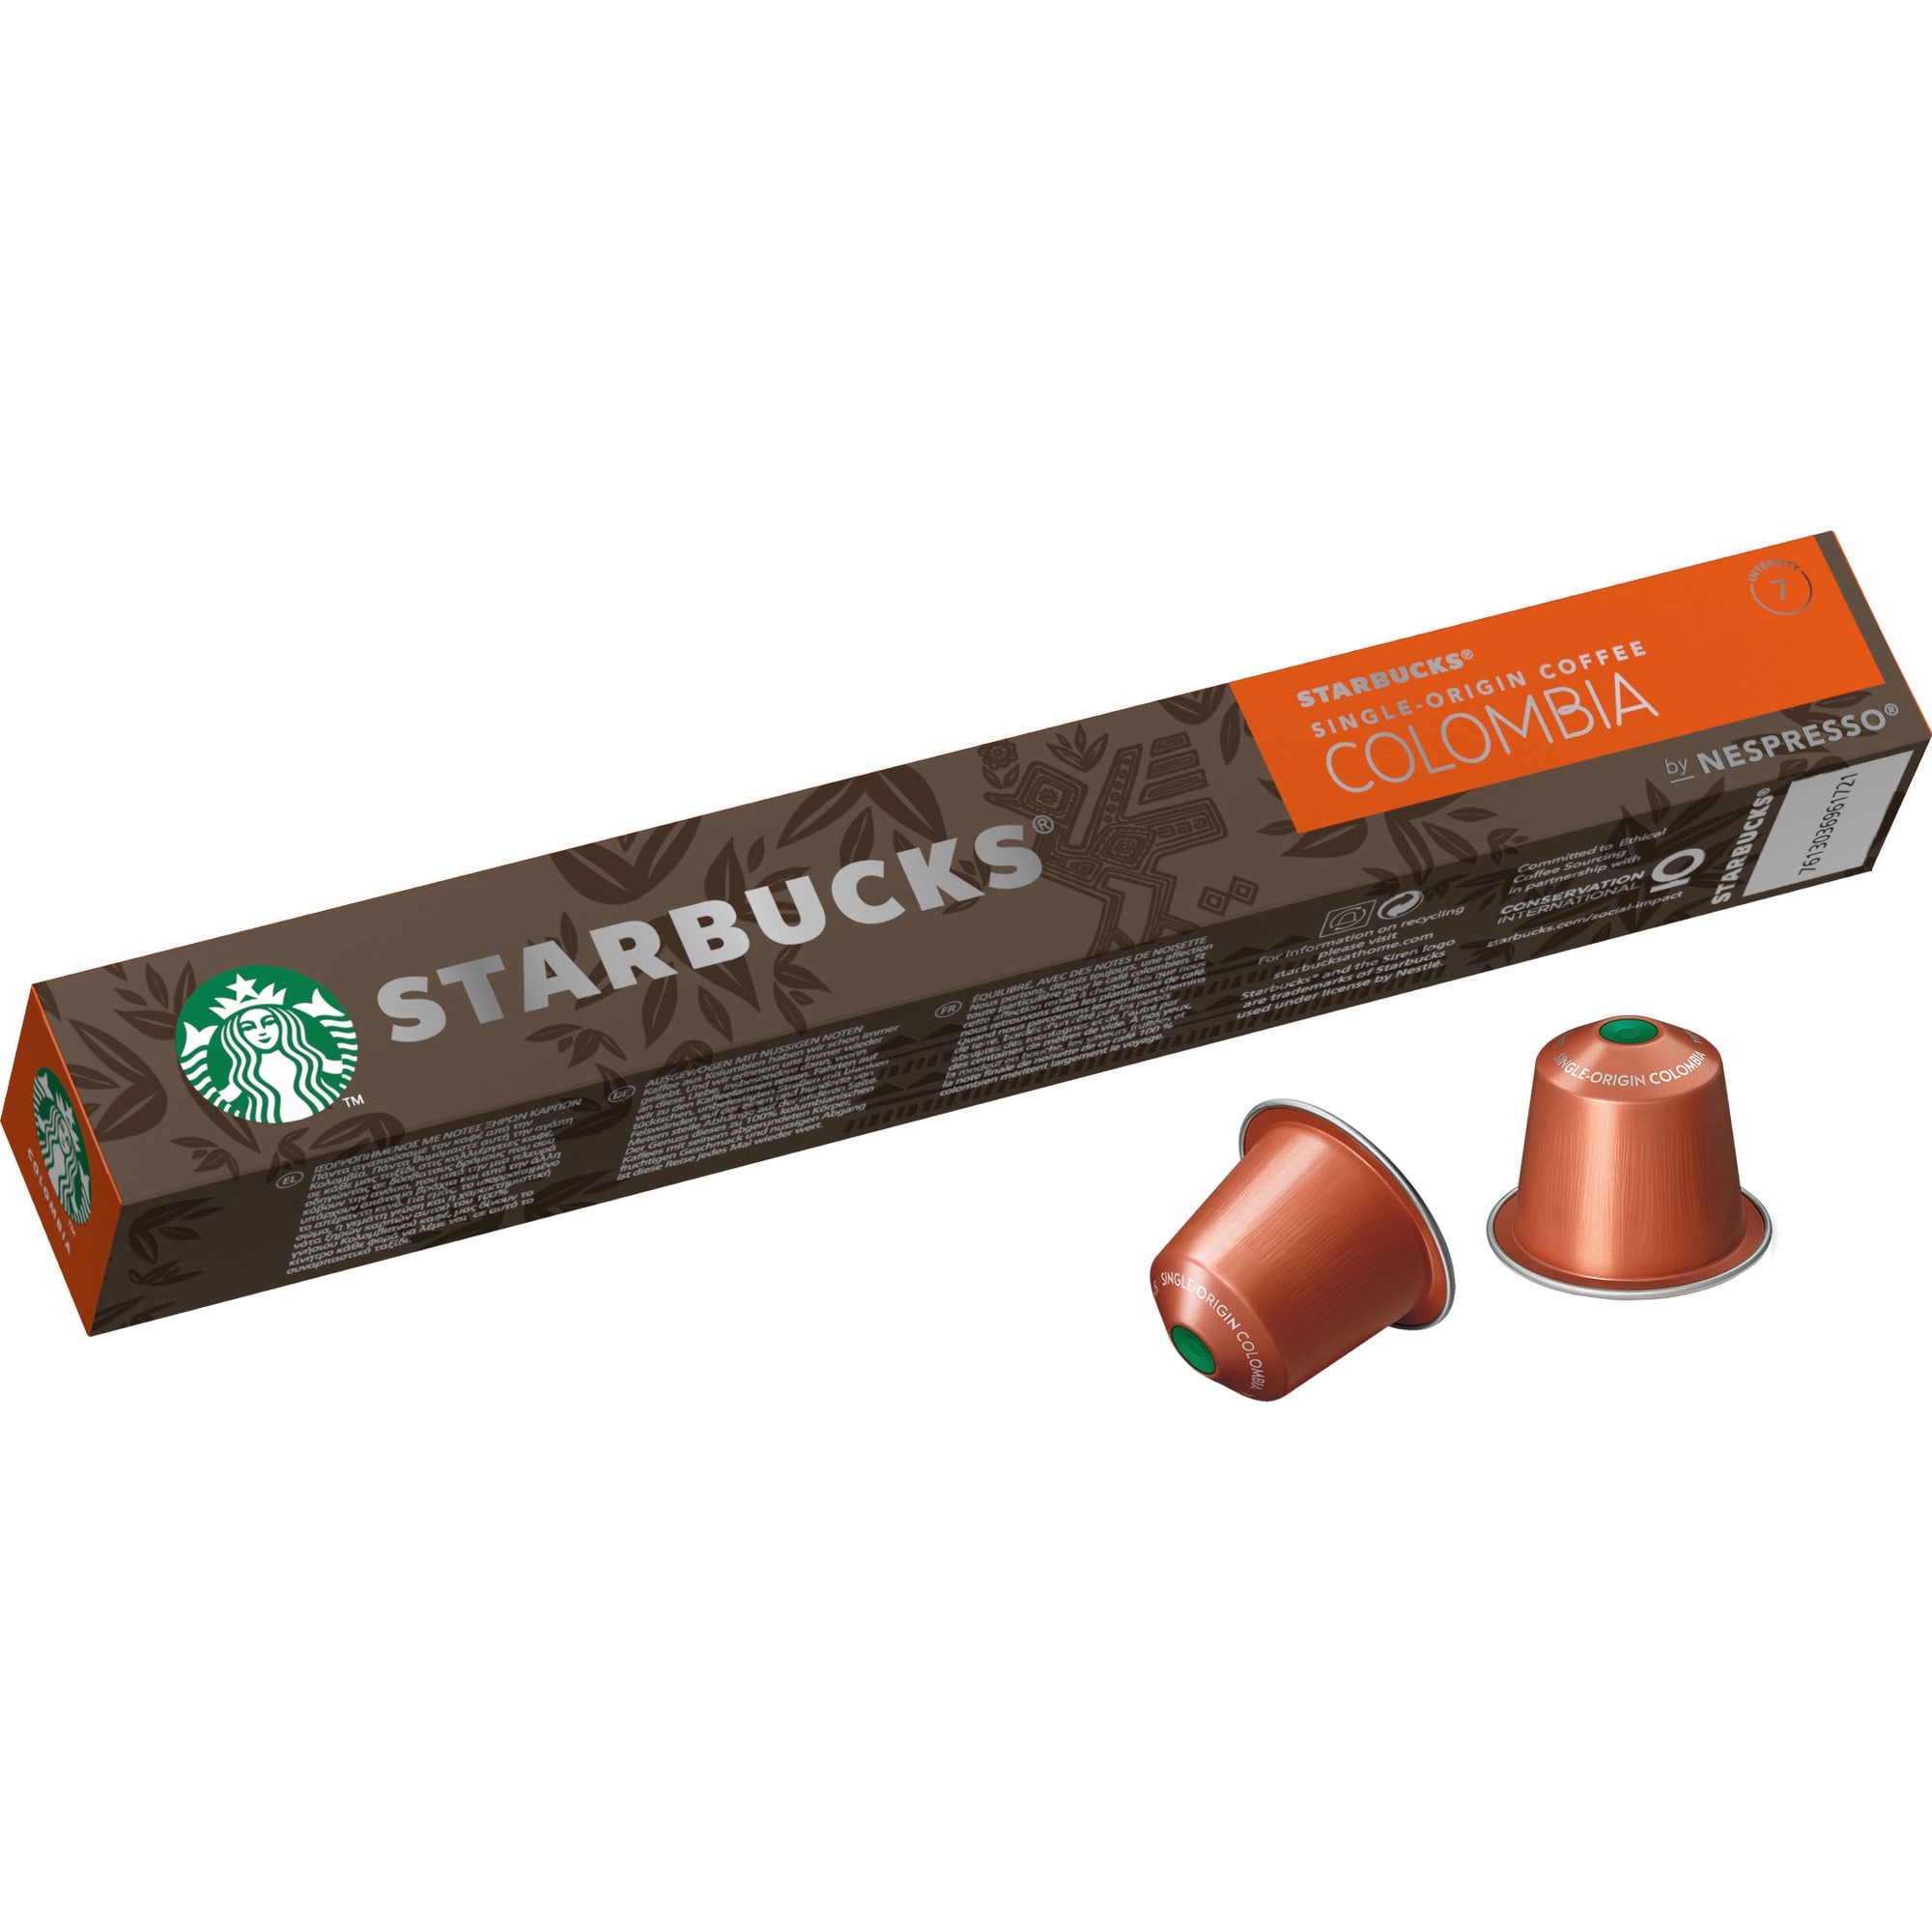 Starbucks by Nespresso Single-Origin Colombia kapsler ST12429169 |  Elgiganten